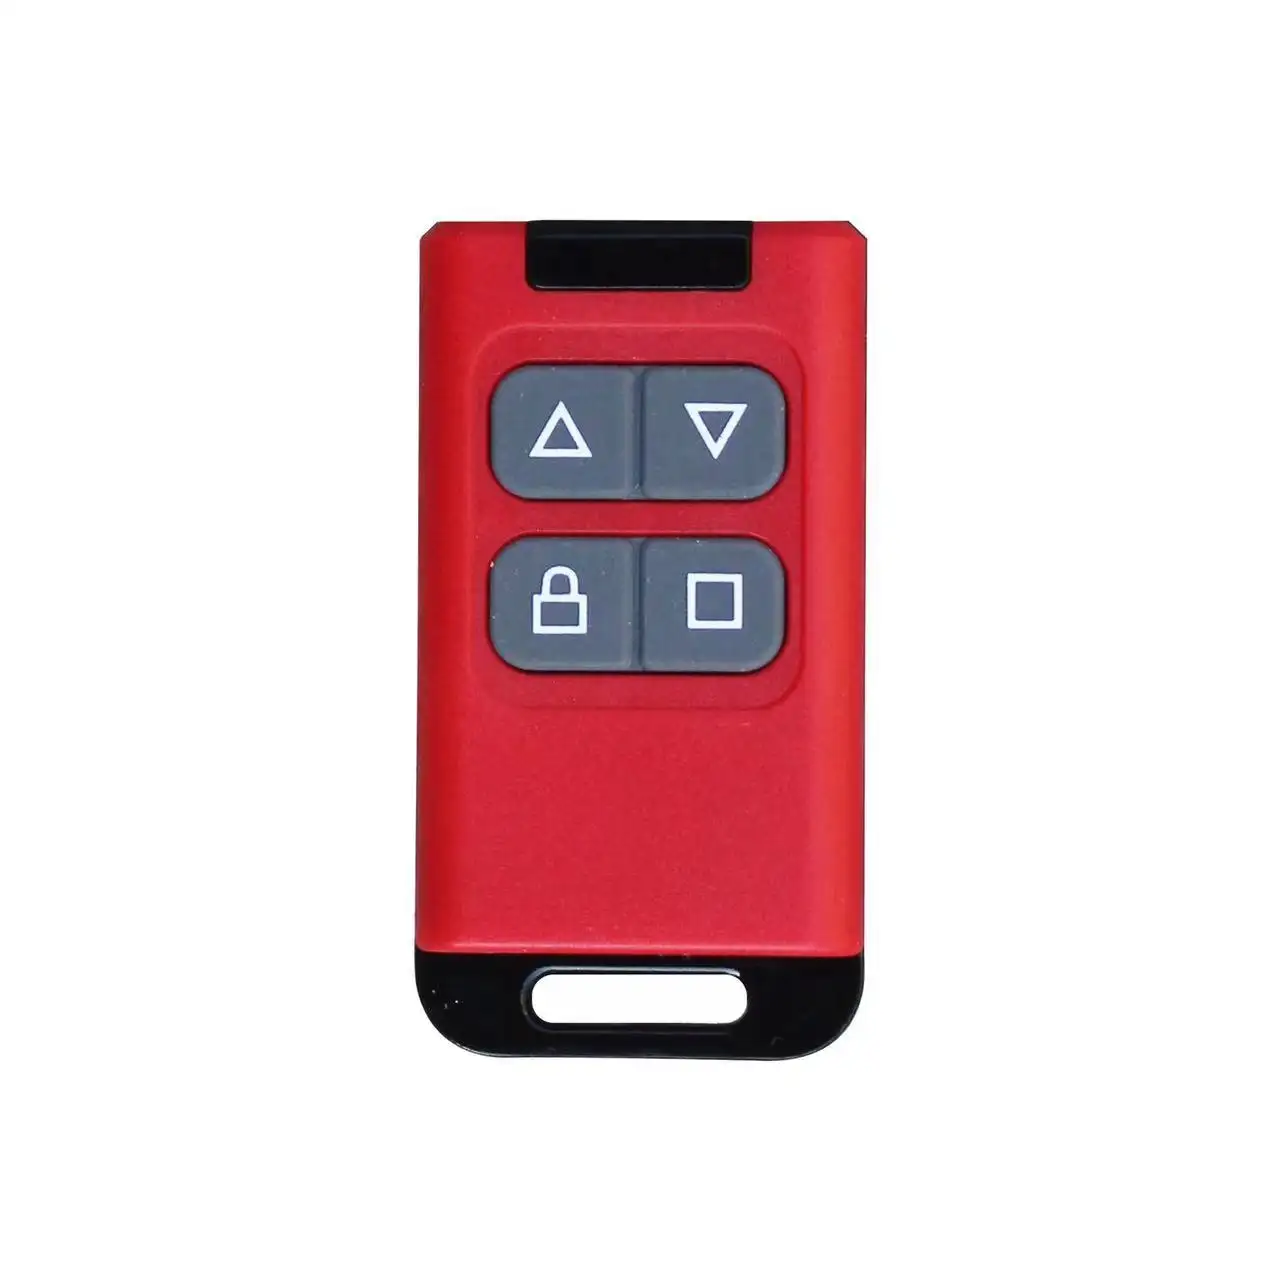 4 keys 433mhz remote control for garage door opener